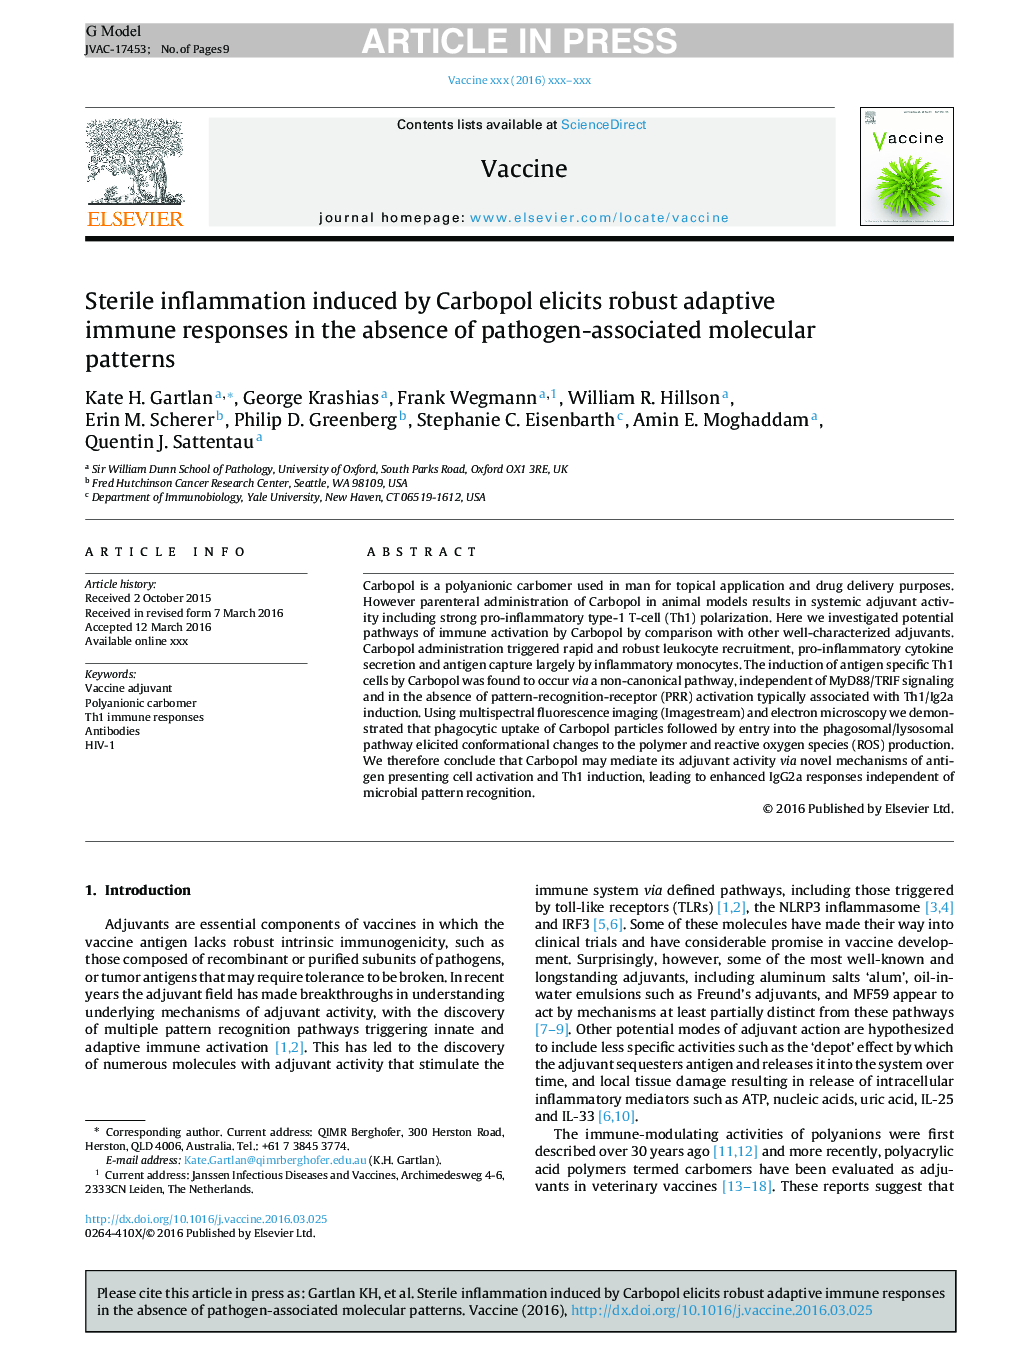 التهاب استریل ناشی از کربوپول در پاسخ به واکنش های ایمنی سازگار قوی در غیاب الگوهای مولکولی مرتبط با پاتوژن 